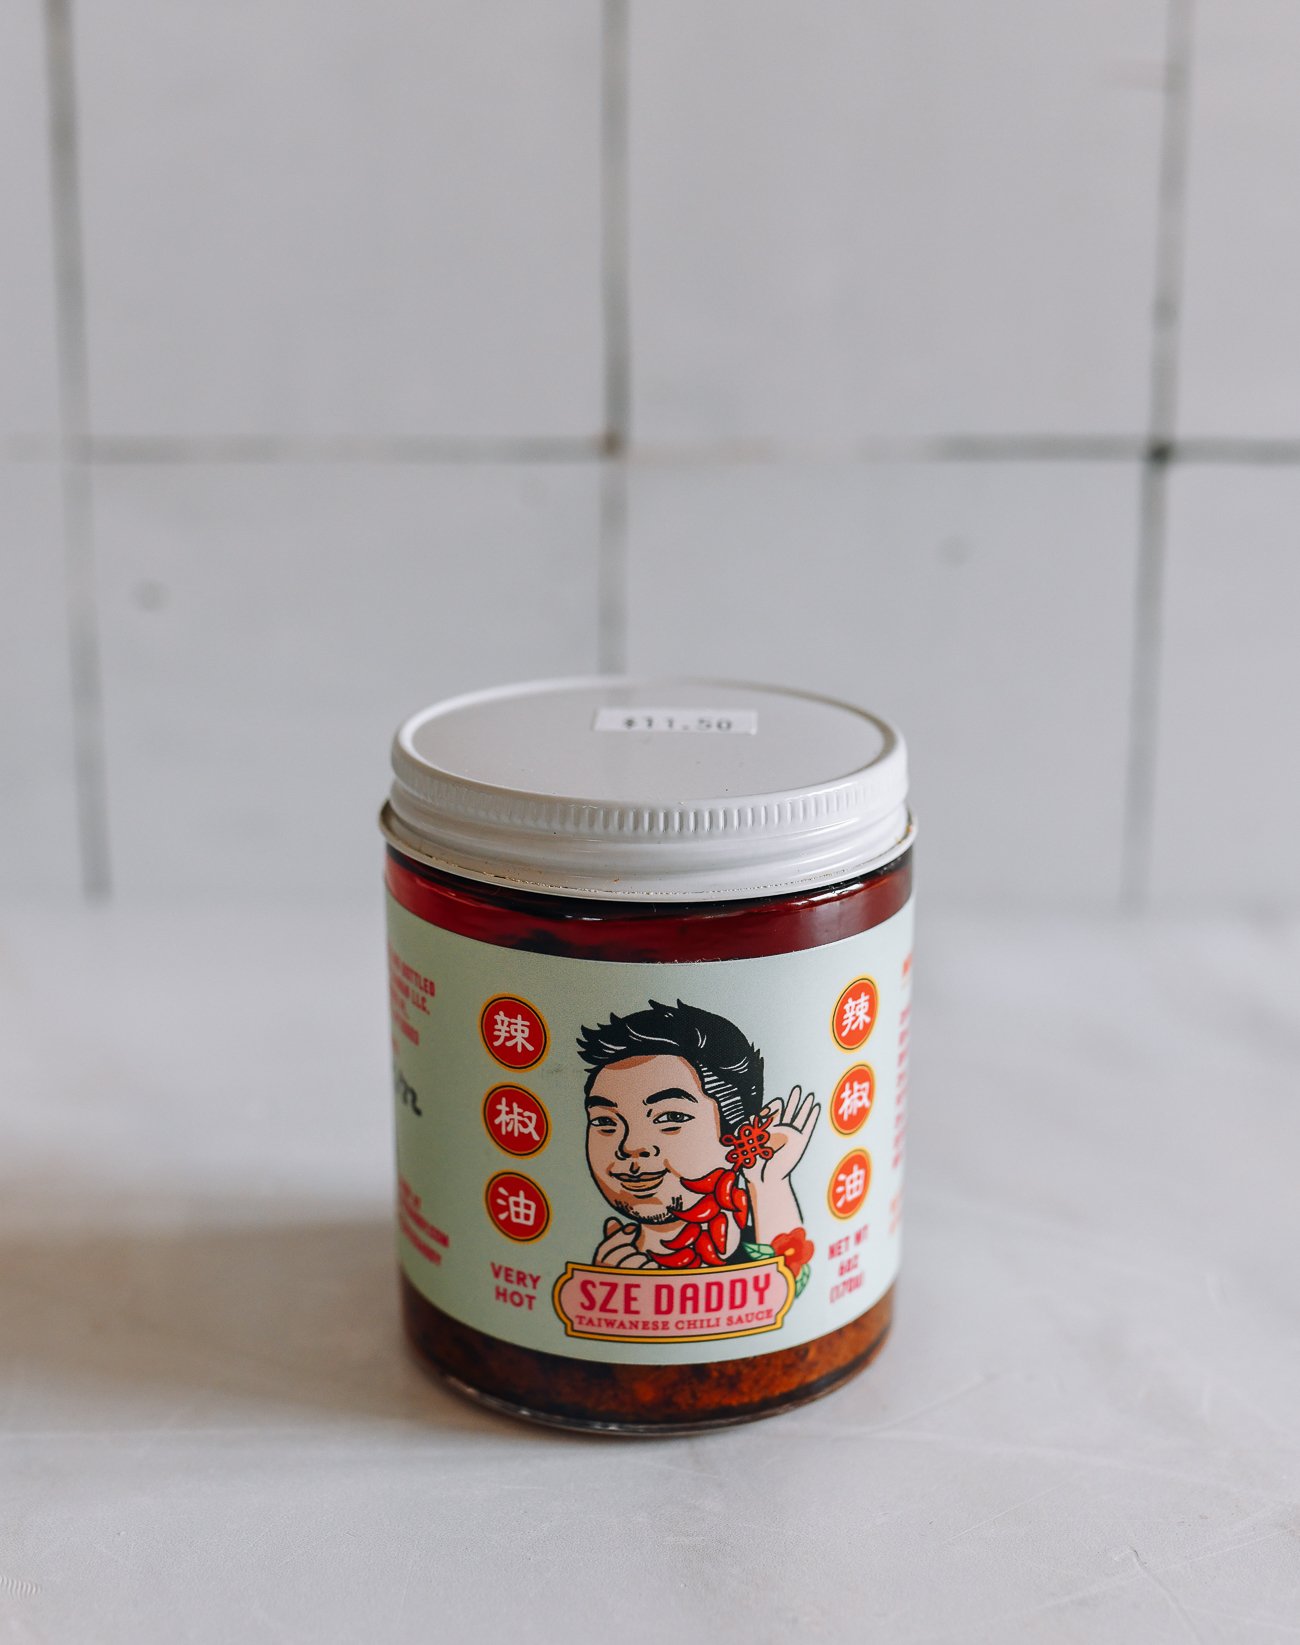 Sze Daddy Taiwanese Chili Sauce